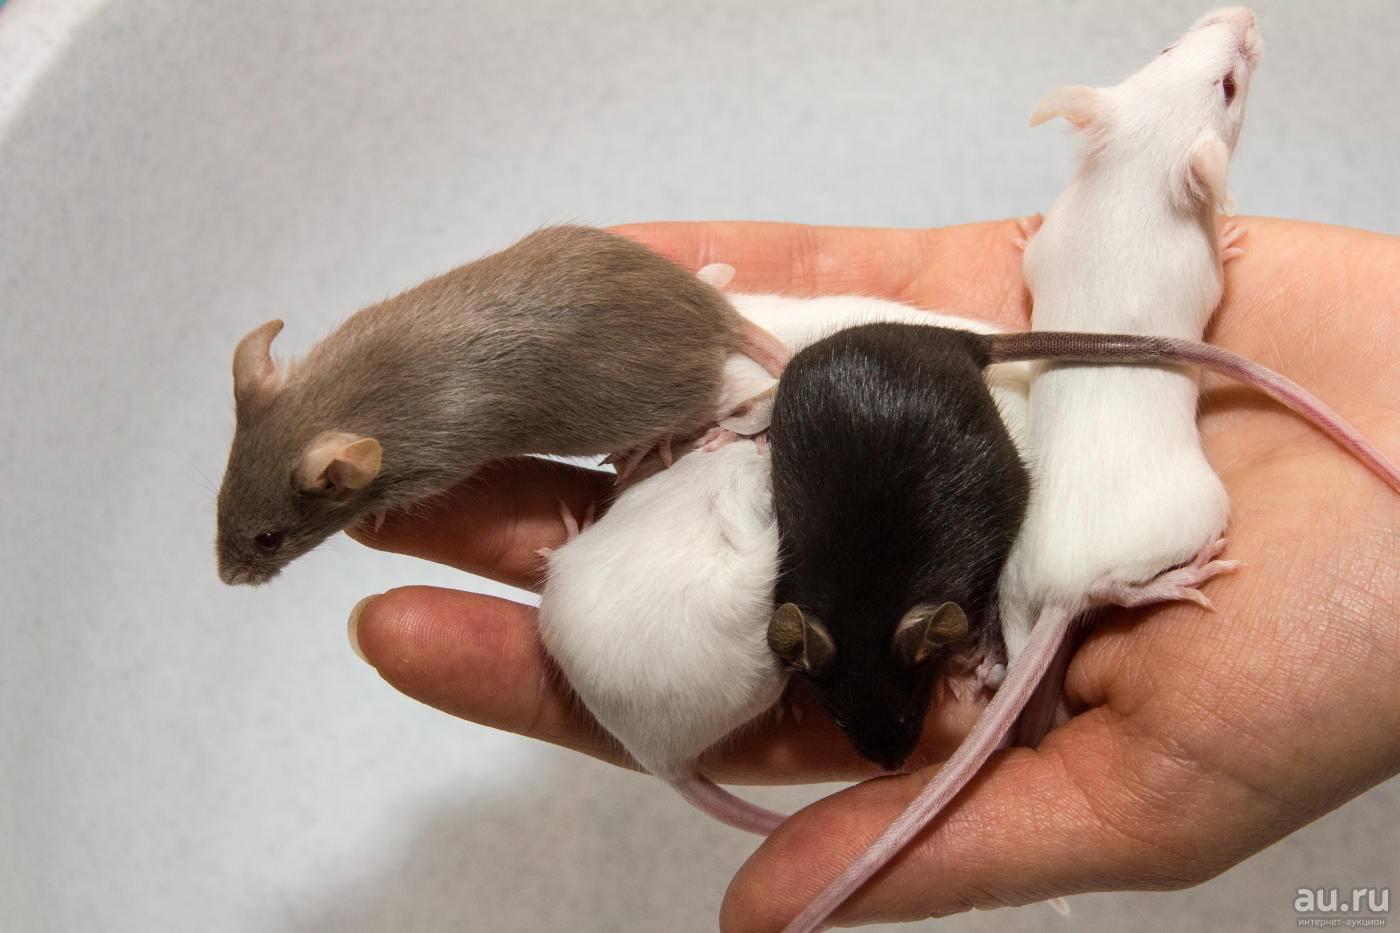 Как размножаются мыши: сколько мышат рожает мышь за раз, как часто?